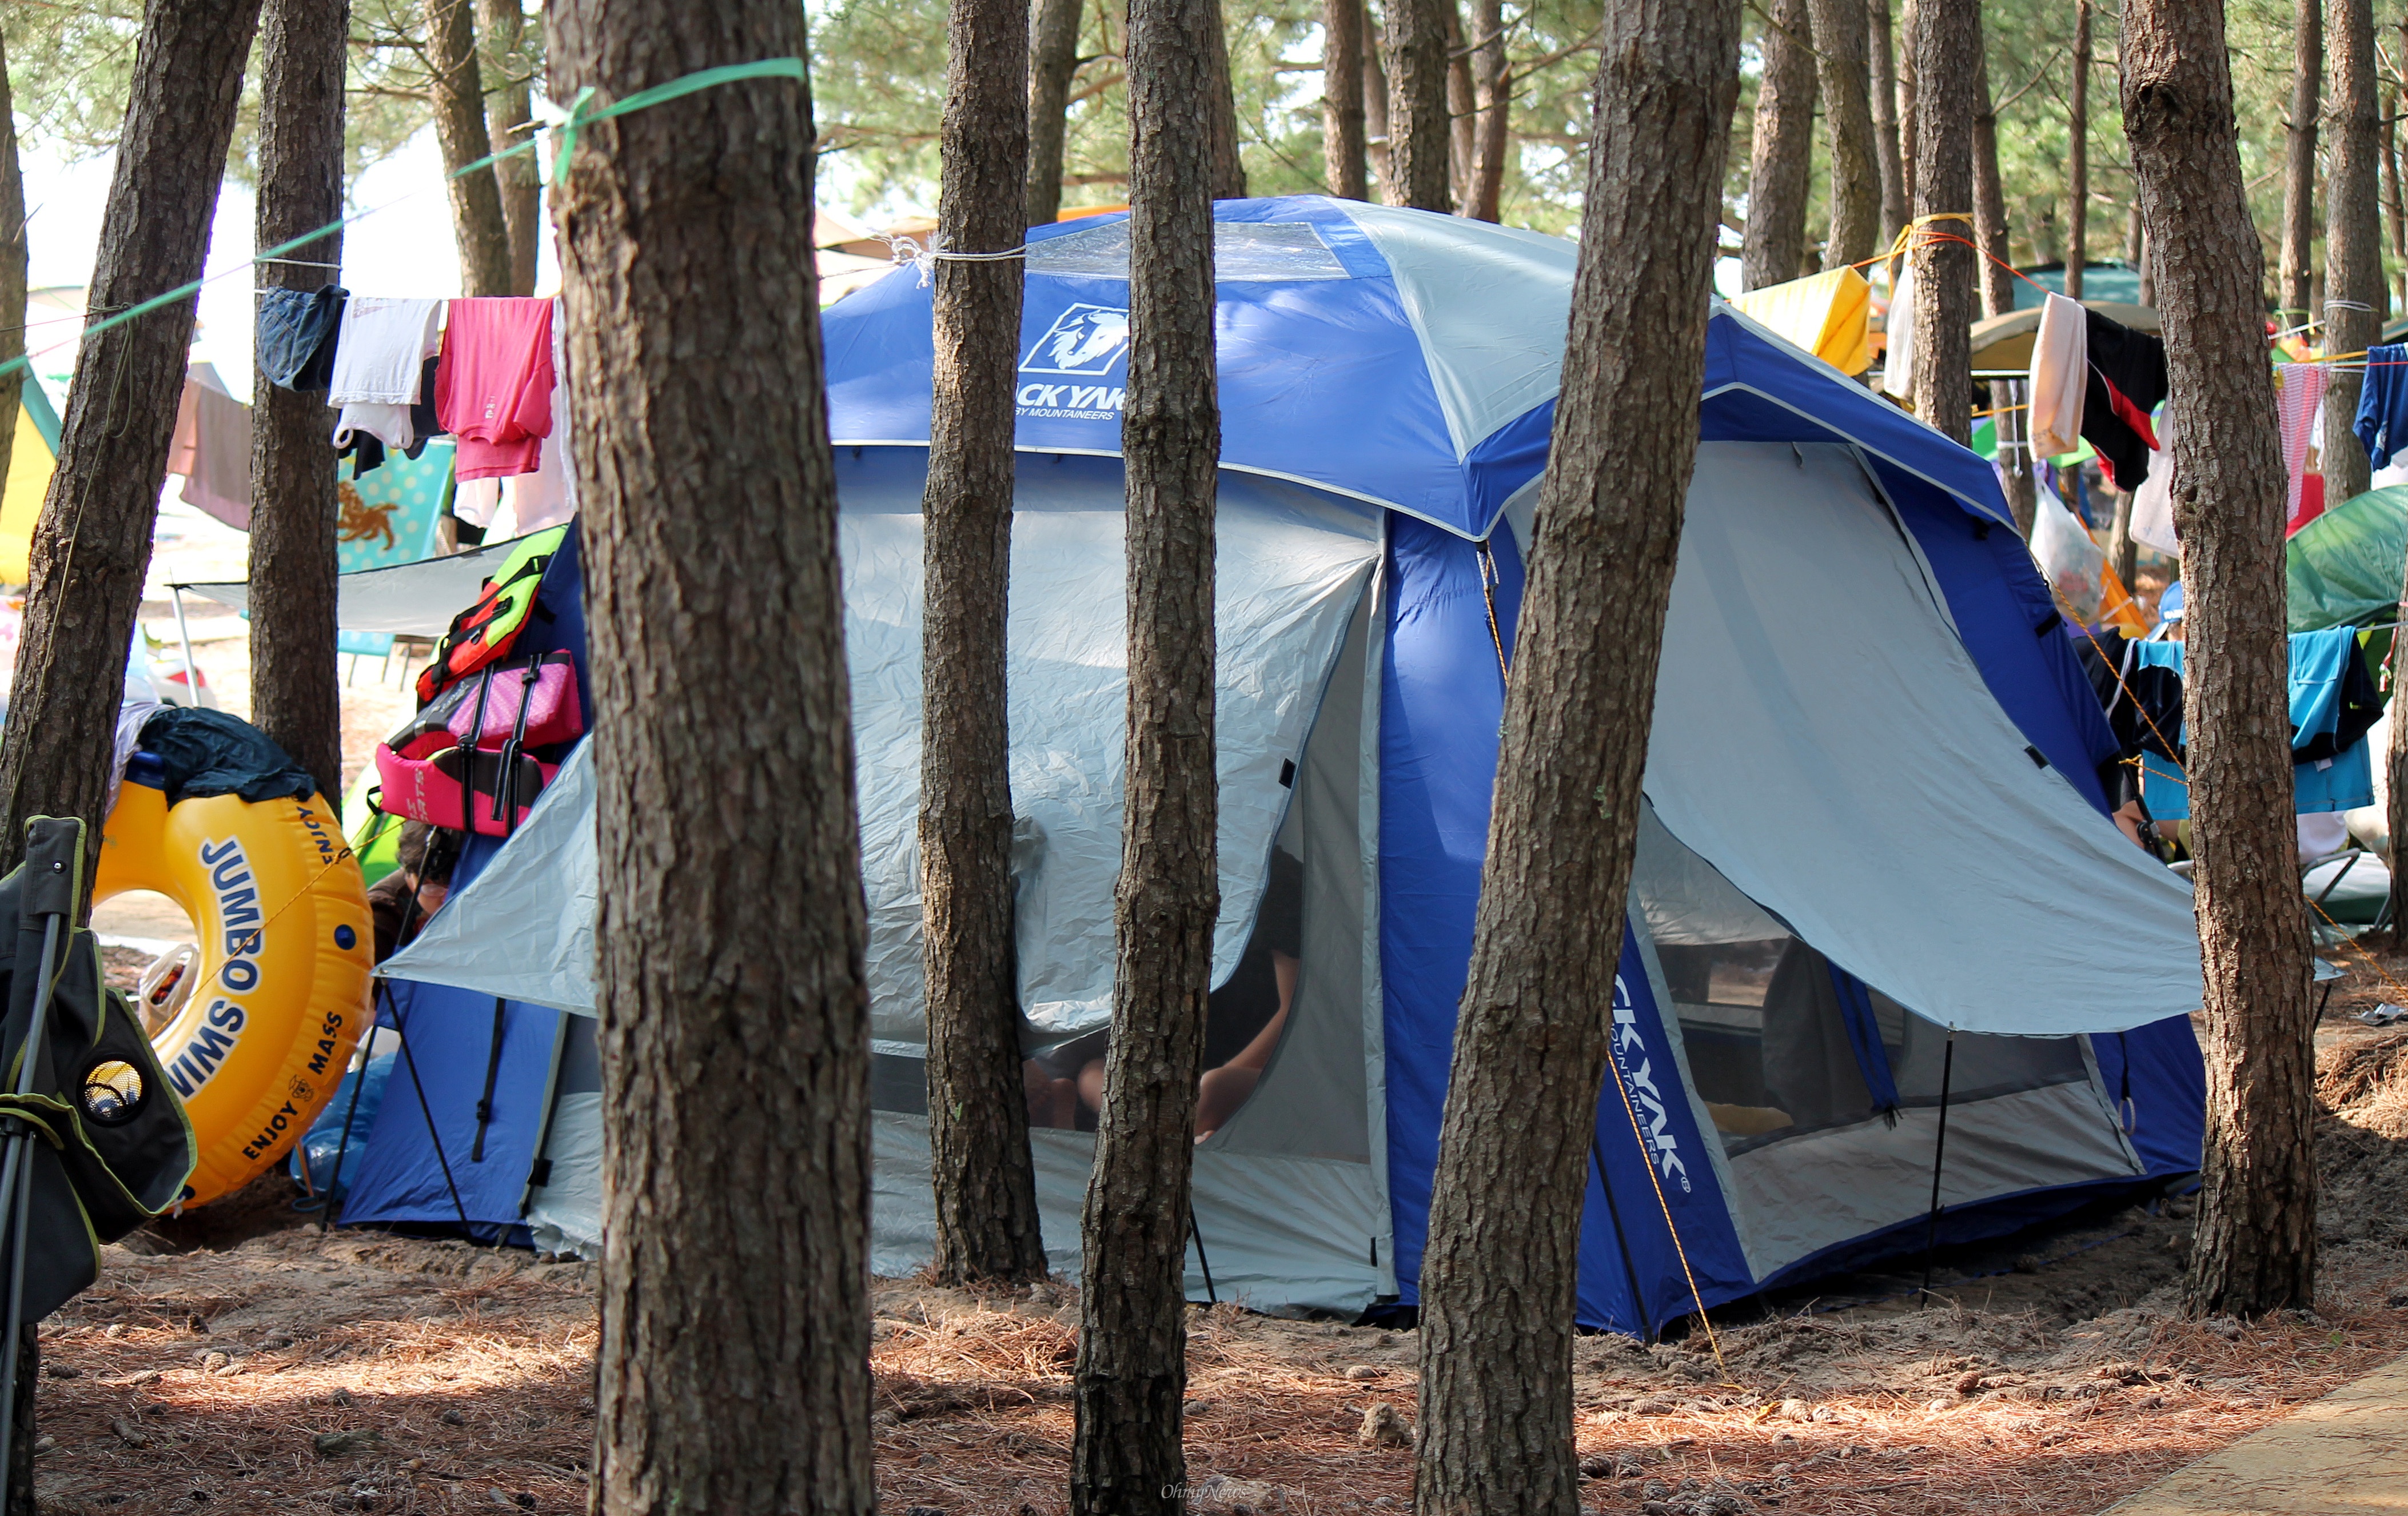 솔밭에 쳐놓은 텐트.